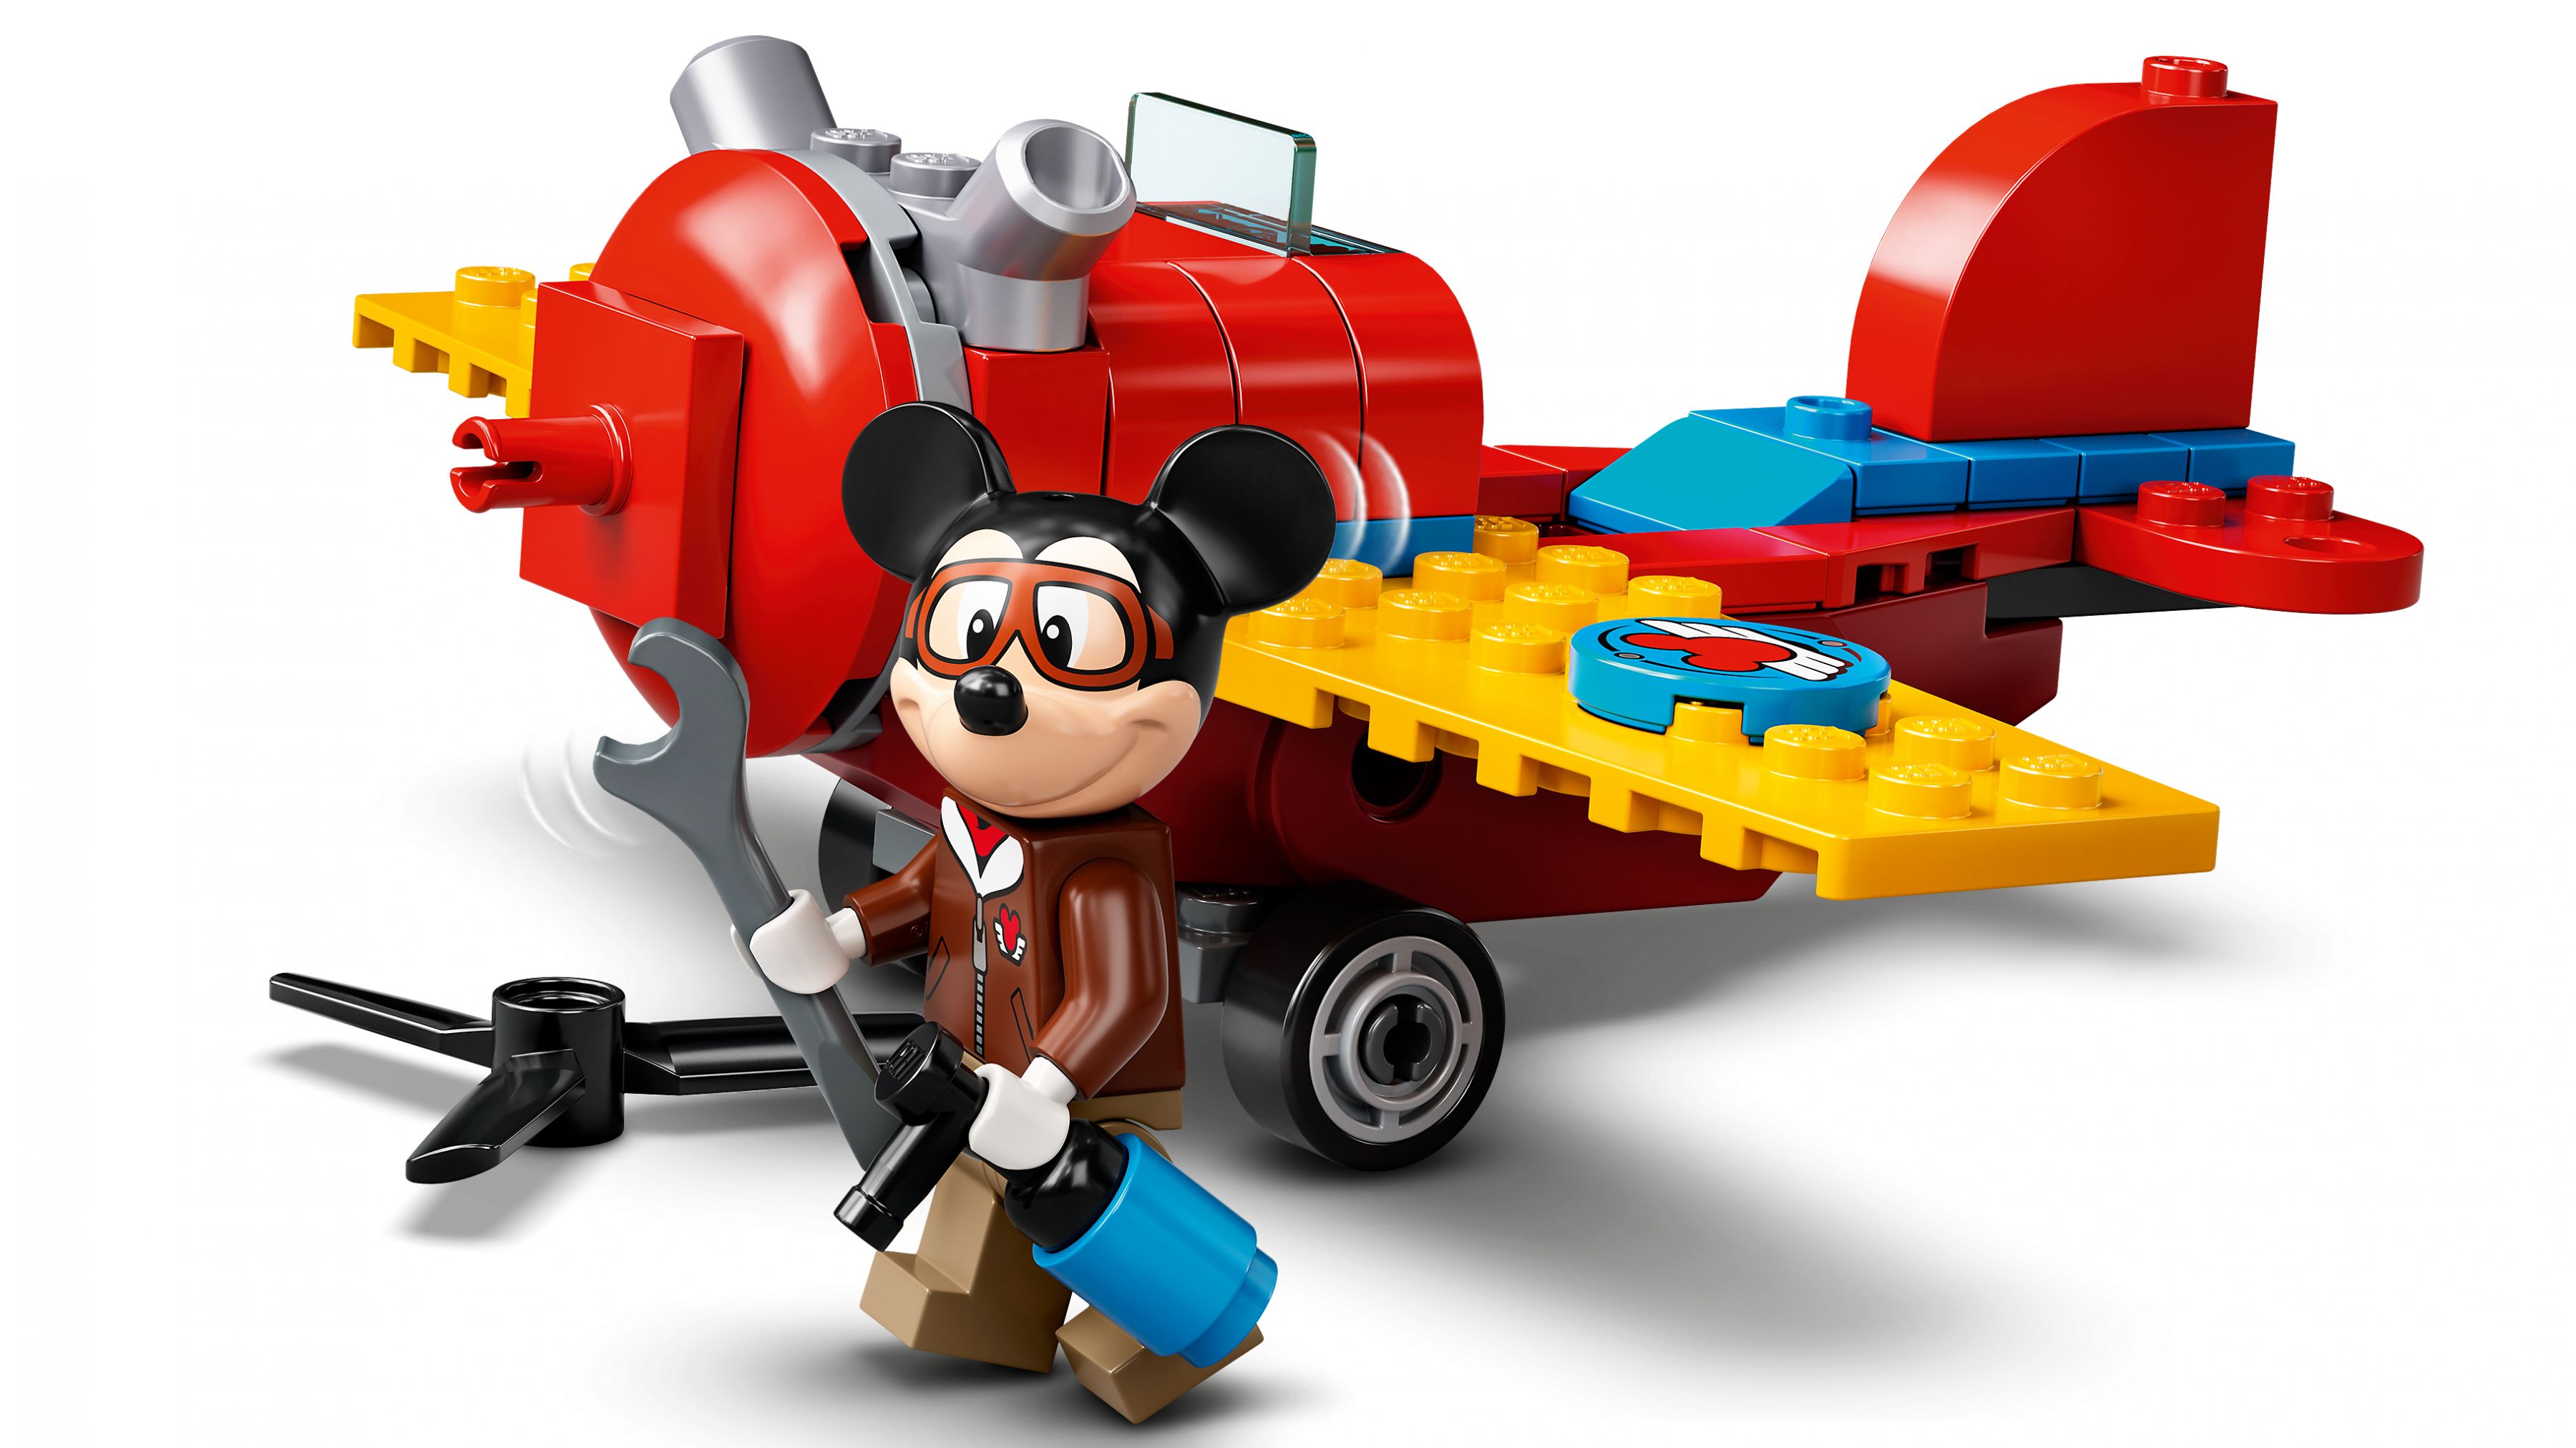 LEGO Disney 10772 Mickys Propellerflugzeug LEGO_10772_alt4.jpg